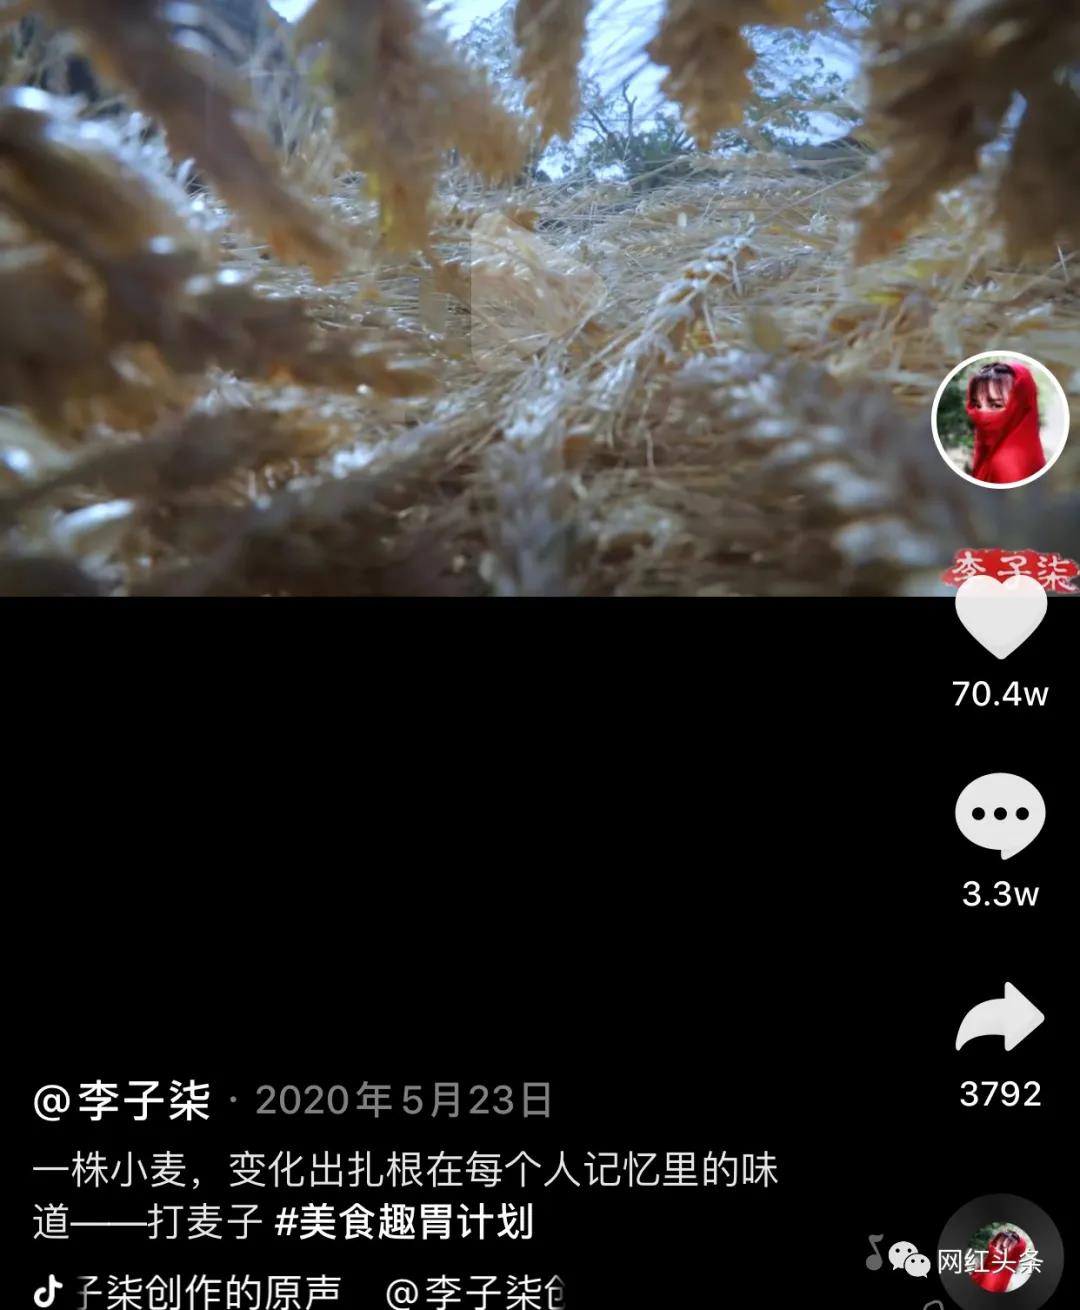 李子柒跻身头部网红的短视频运营方法-传播蛙